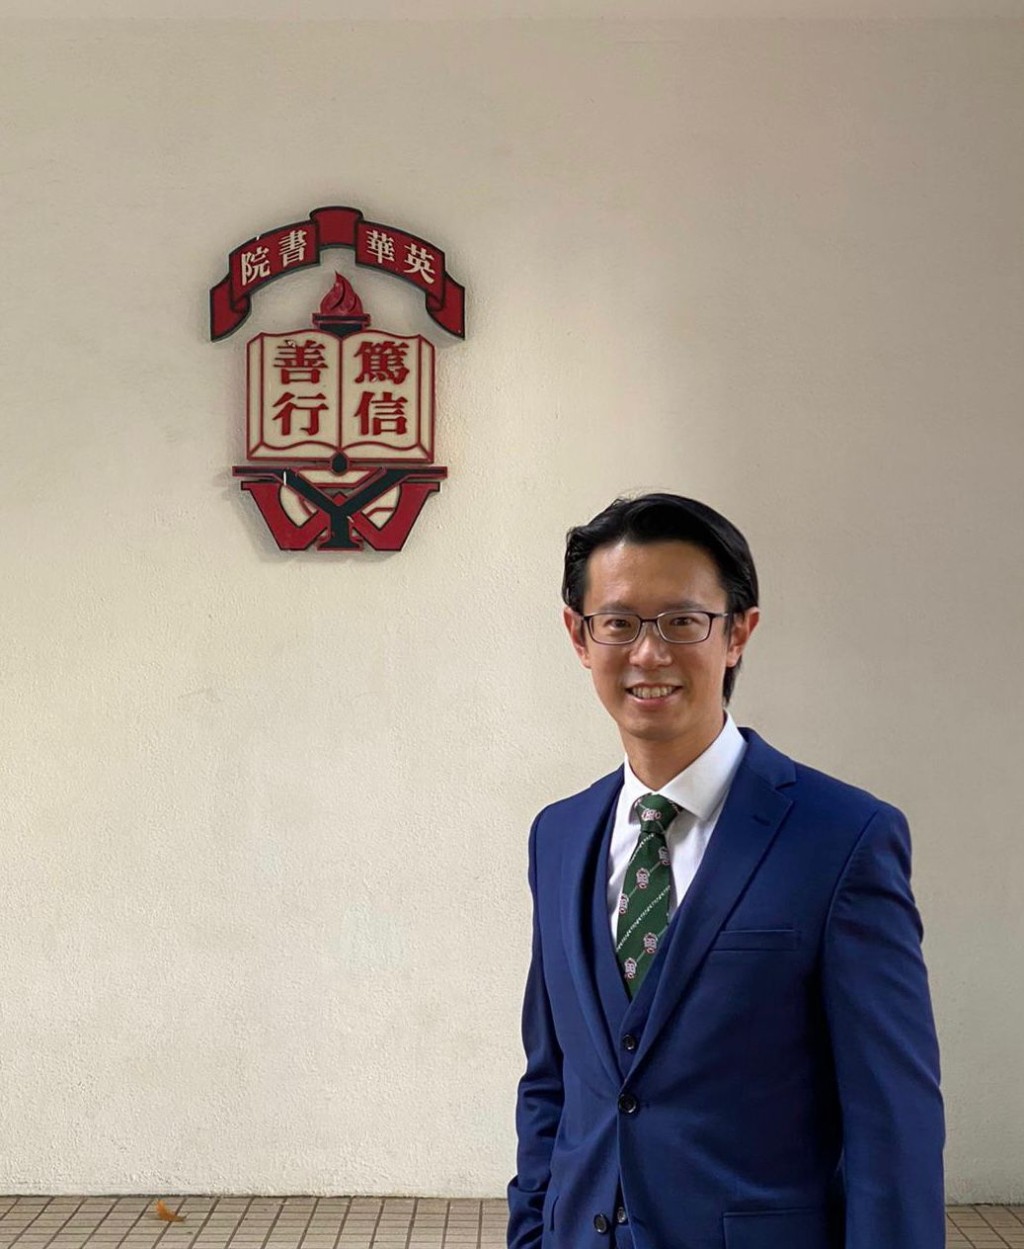 香港直接資助學校議會主席陳狄安表示，家長選校前應留意學校背景和發展。